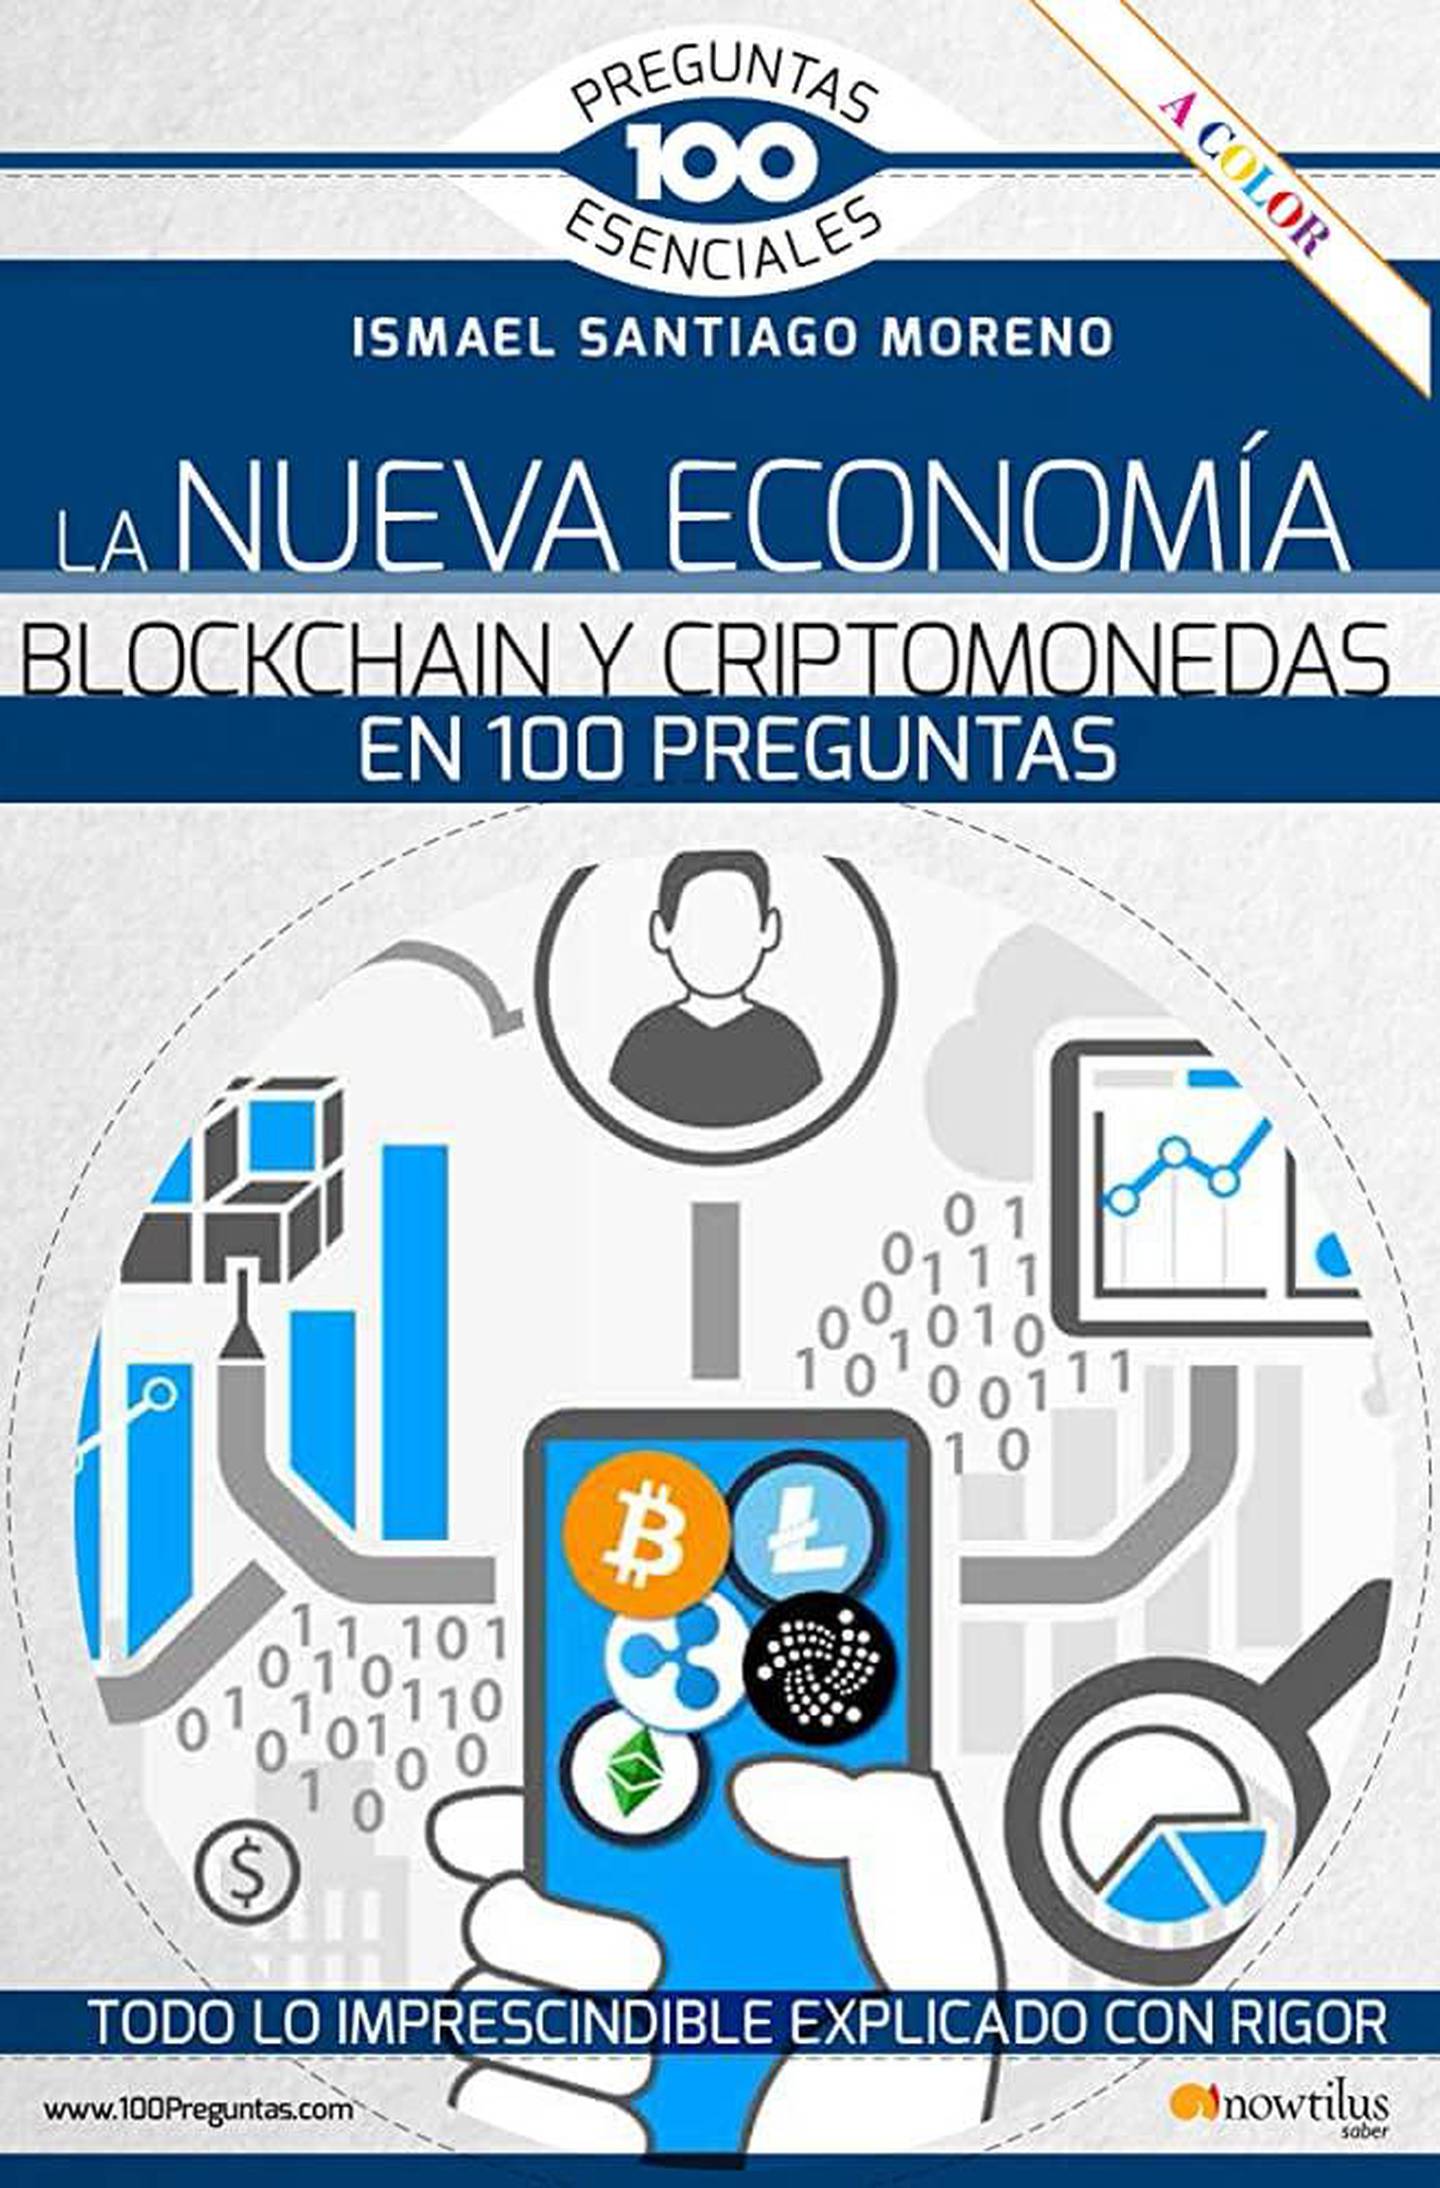 La Nueva Economía Blockchain y Criptomonedas en 100 Preguntasdfd